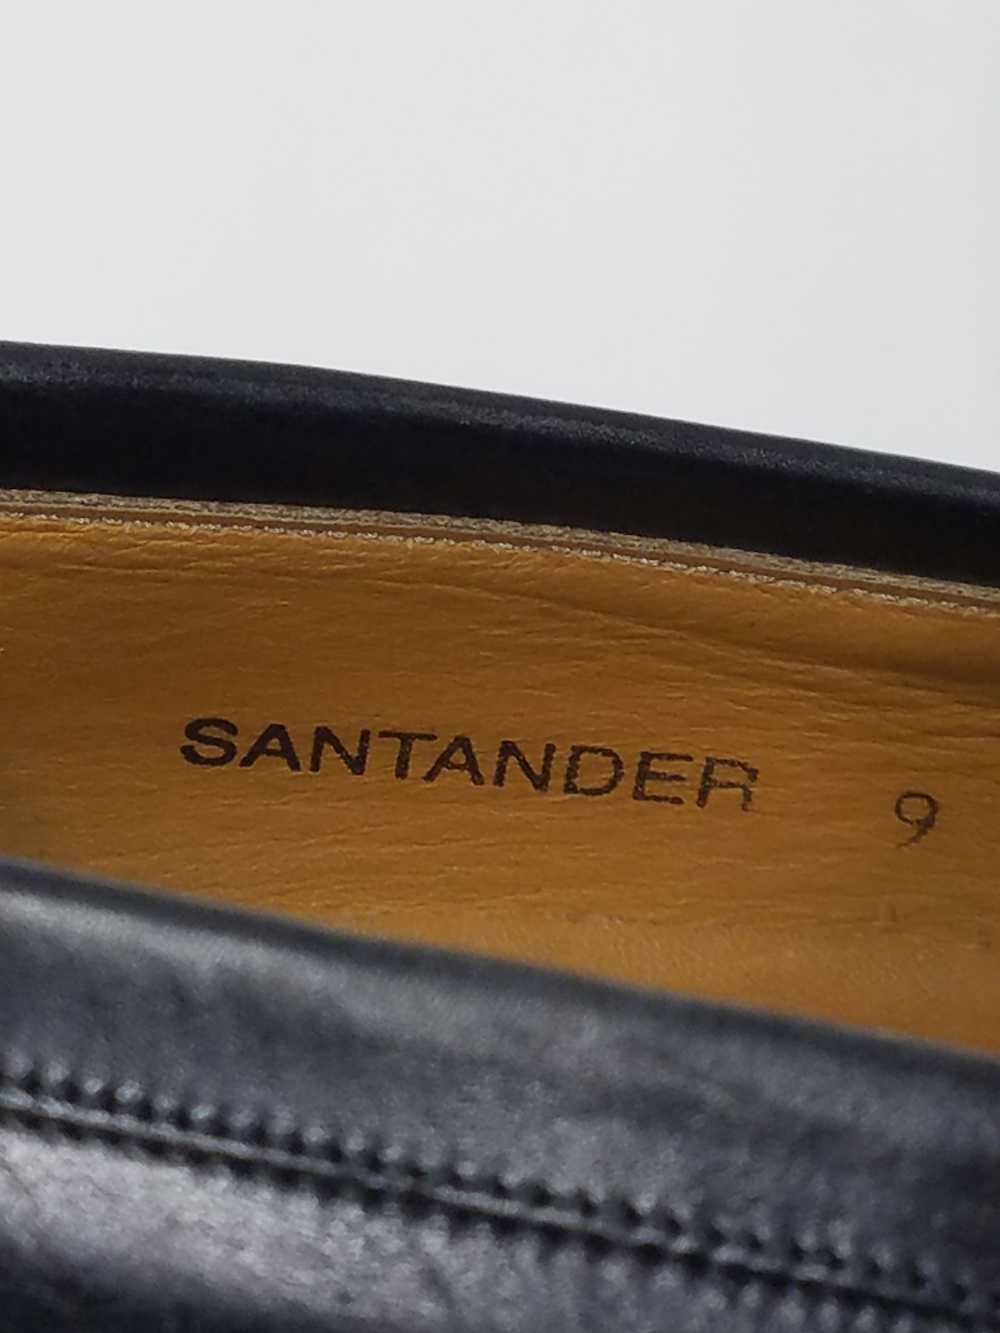 Men's Mezlan Santander Umbranil Leather Kiltie Ta… - image 7